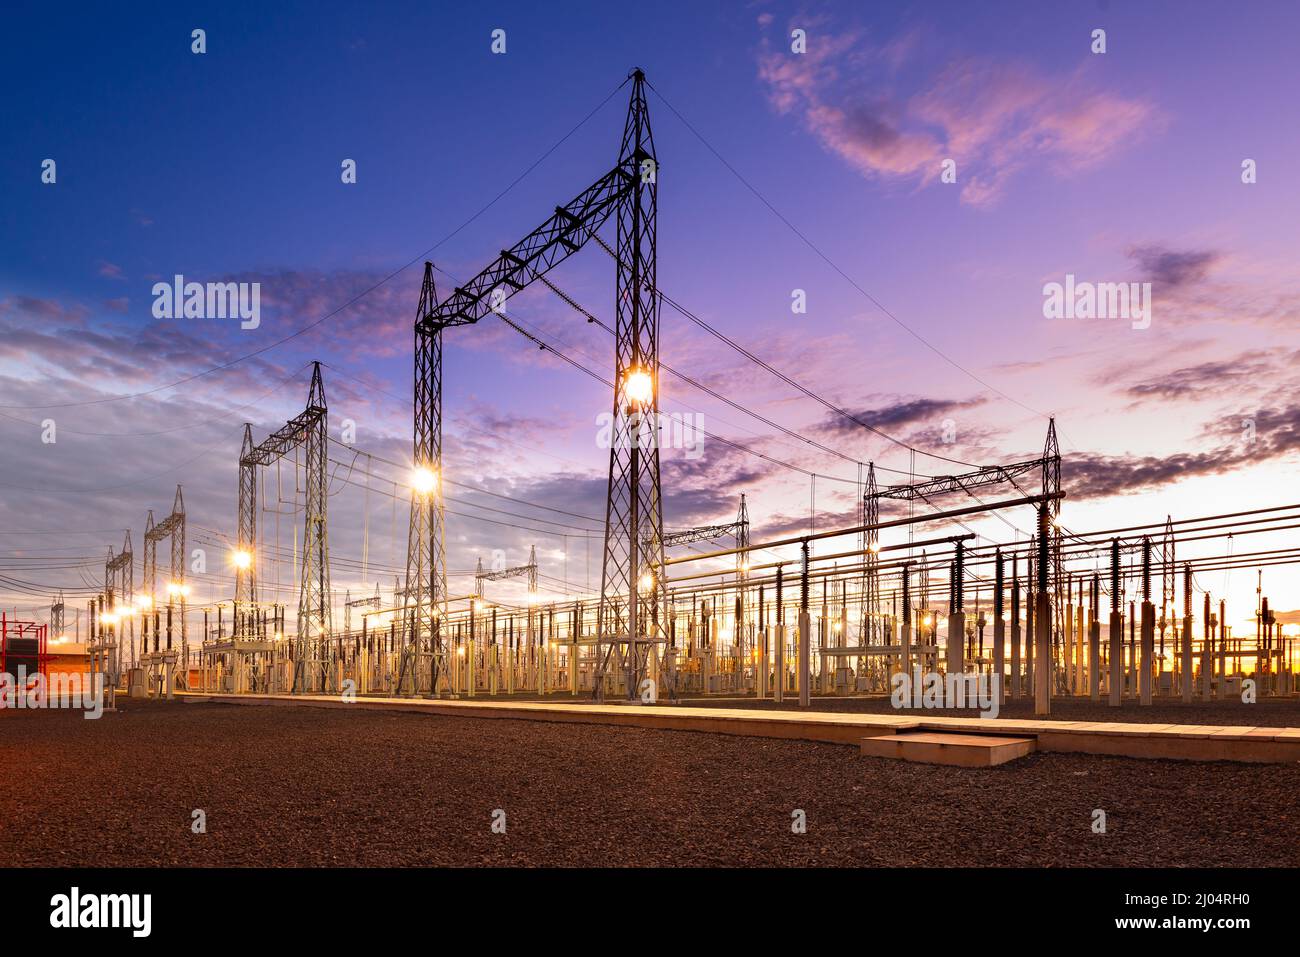 Electric substation in Asuncion, Paraguay at dawn Stock Photo